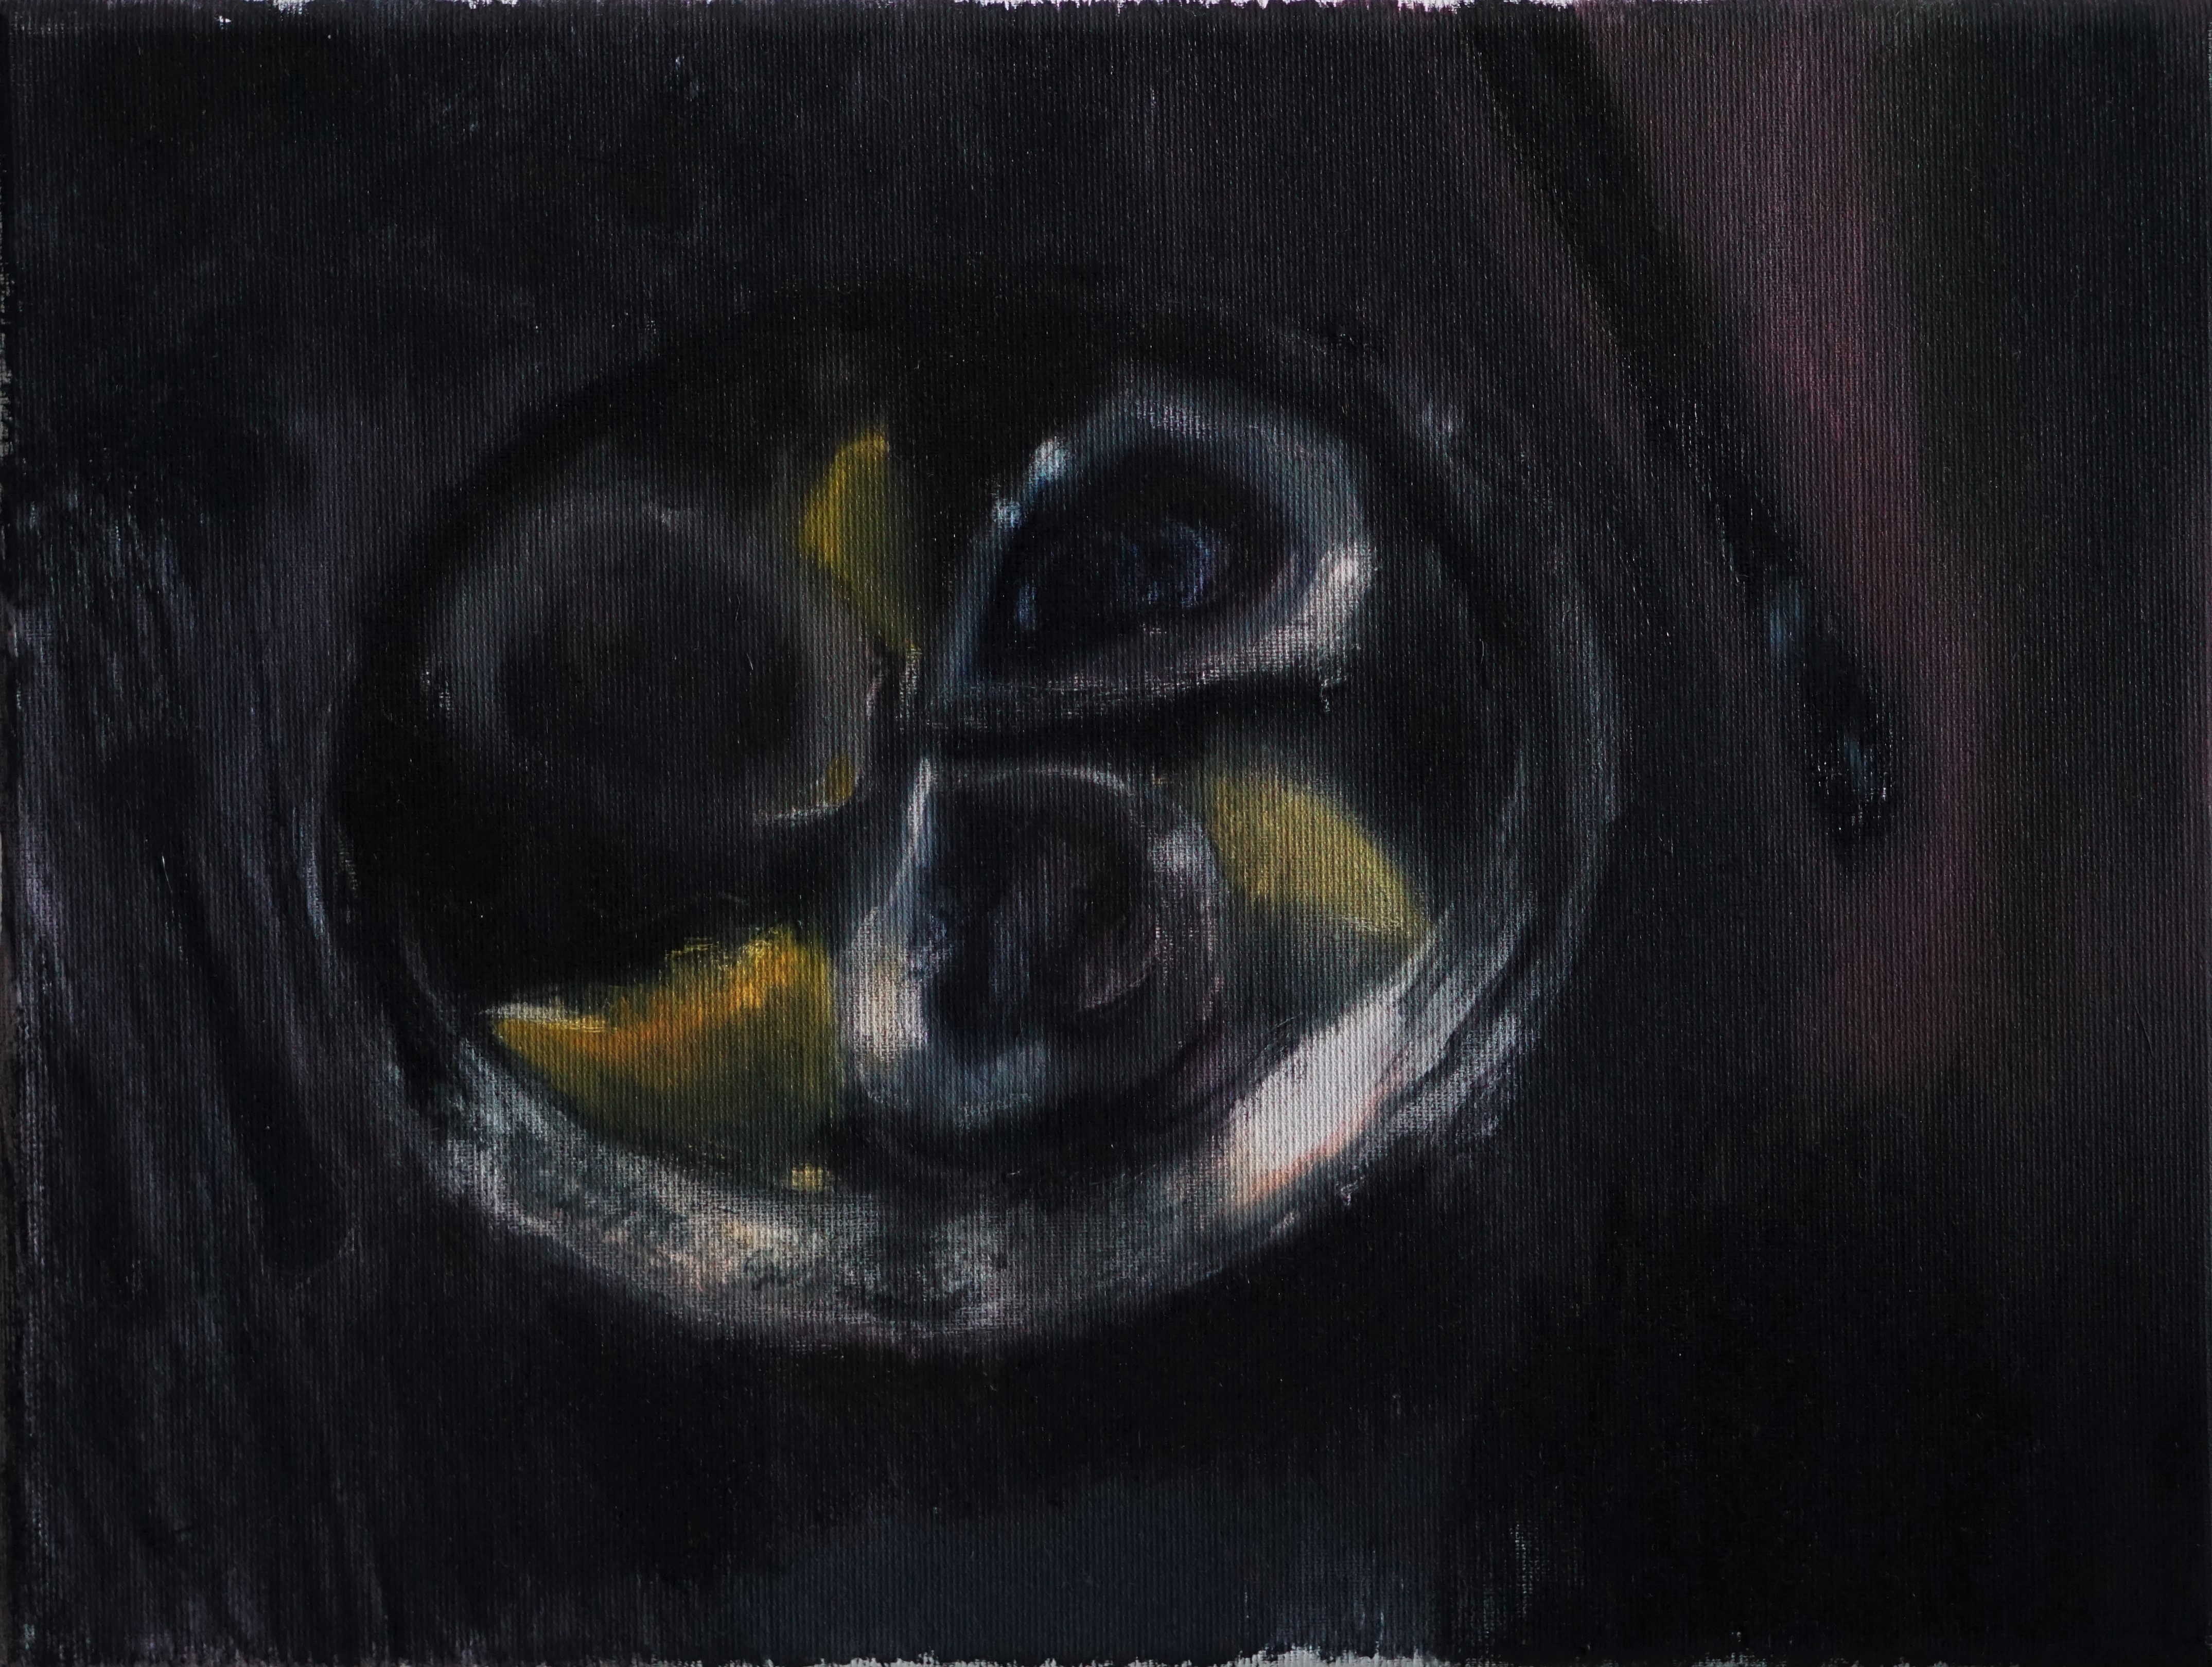 Łukasz Stokłosa – Wiek niewinności (1) – olej, płótno, 30 x 40 cm, 2020